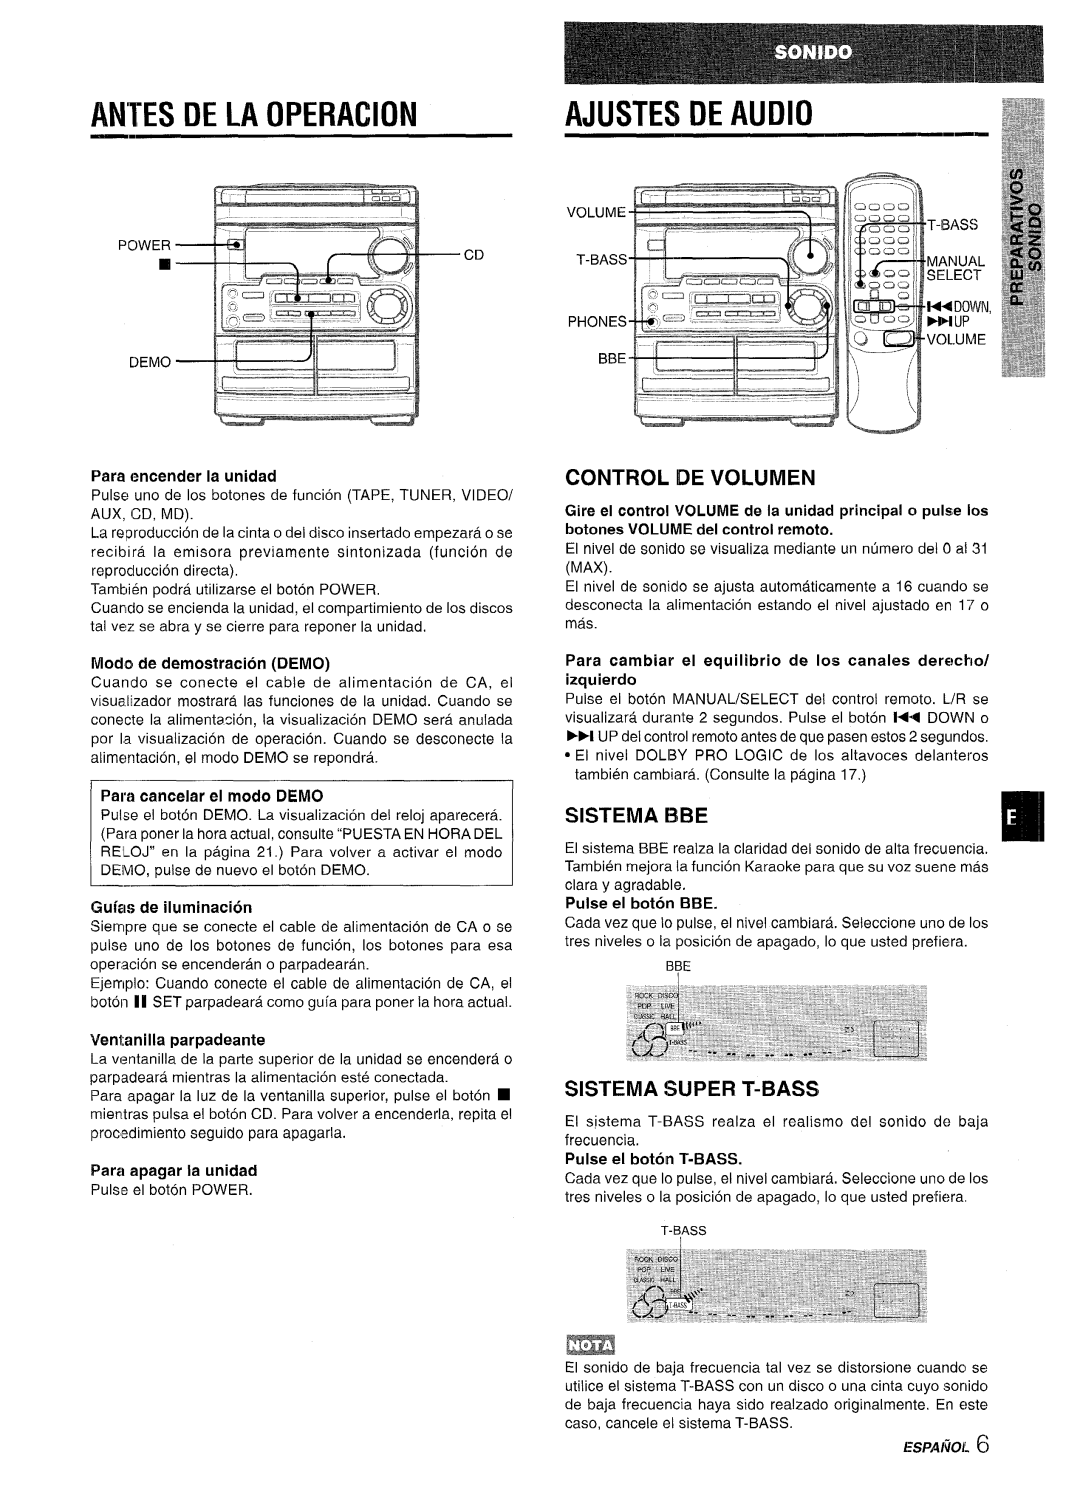 Aiwa CX-NMT50 manual Antes De La Operacion, Ajustes De Audio, Control De Volumen, SISTEMA 13BE, Sistema Super T-Bass 